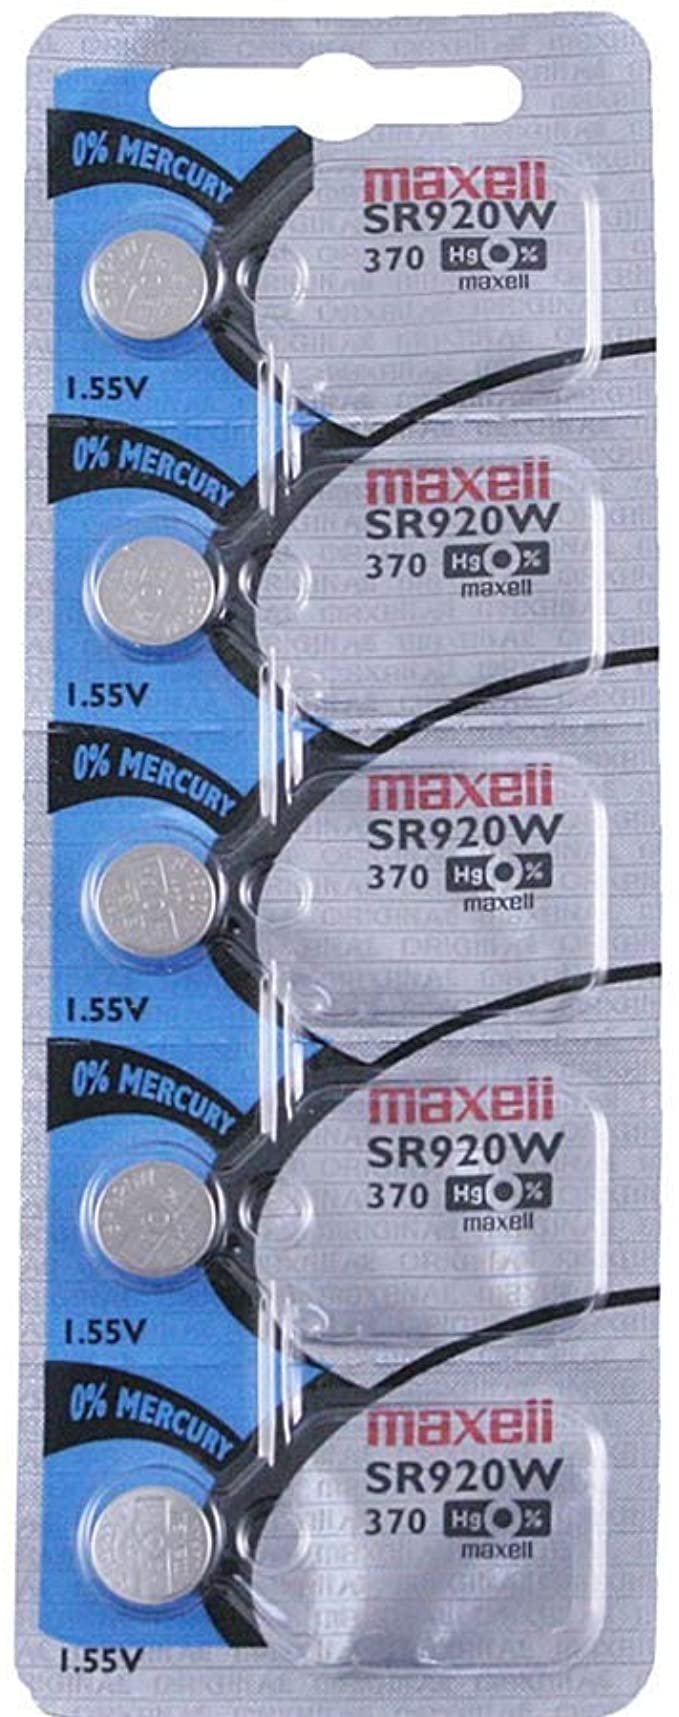 Maxell Watch Battery 370 - SR920W